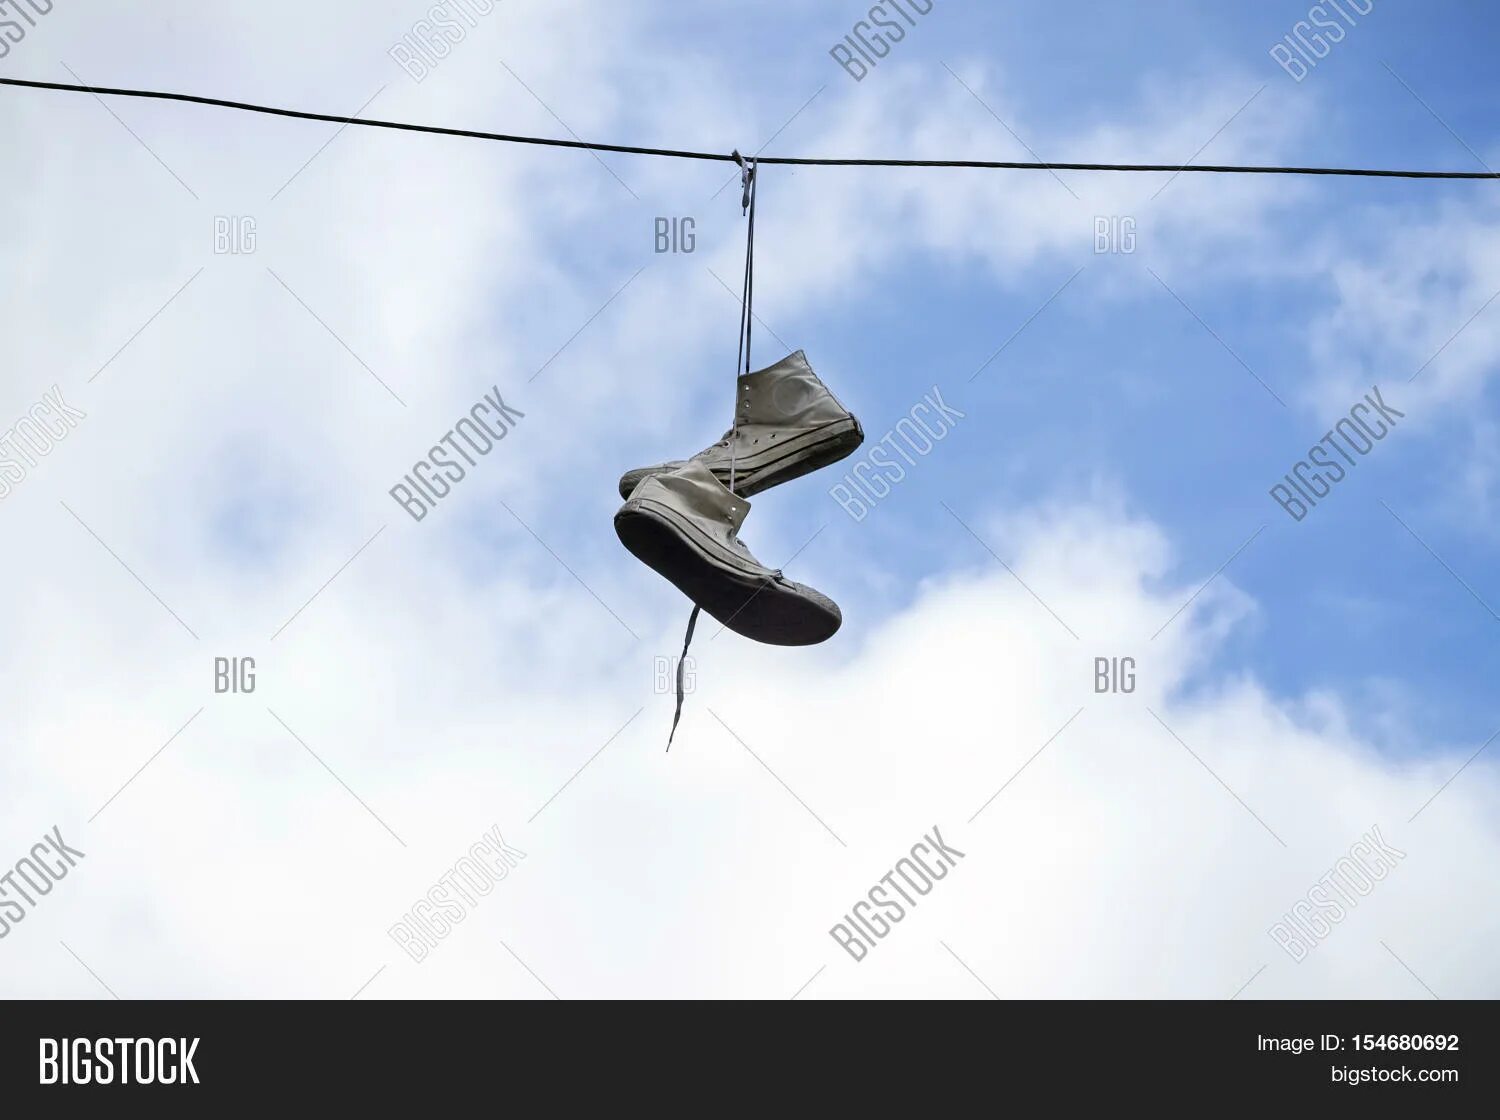 Что значит висящие кроссовки. Висячие кроссовки на проводах. Кеды висят на проводах. Кроссовки на электрических проводах. Летающие тапочки.